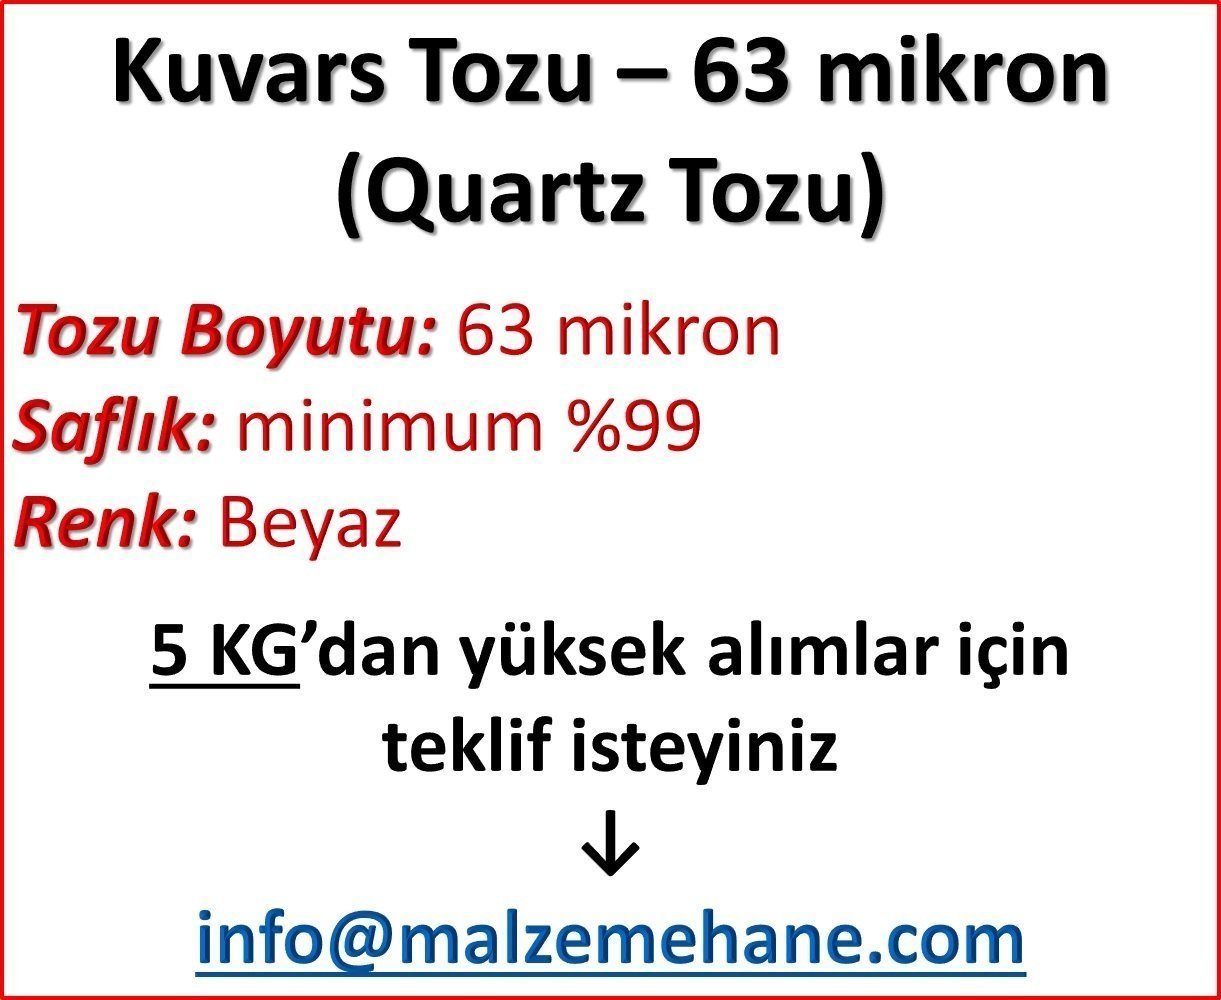 Kuvars Tozu (Ouartz Tozu) 230 mesh